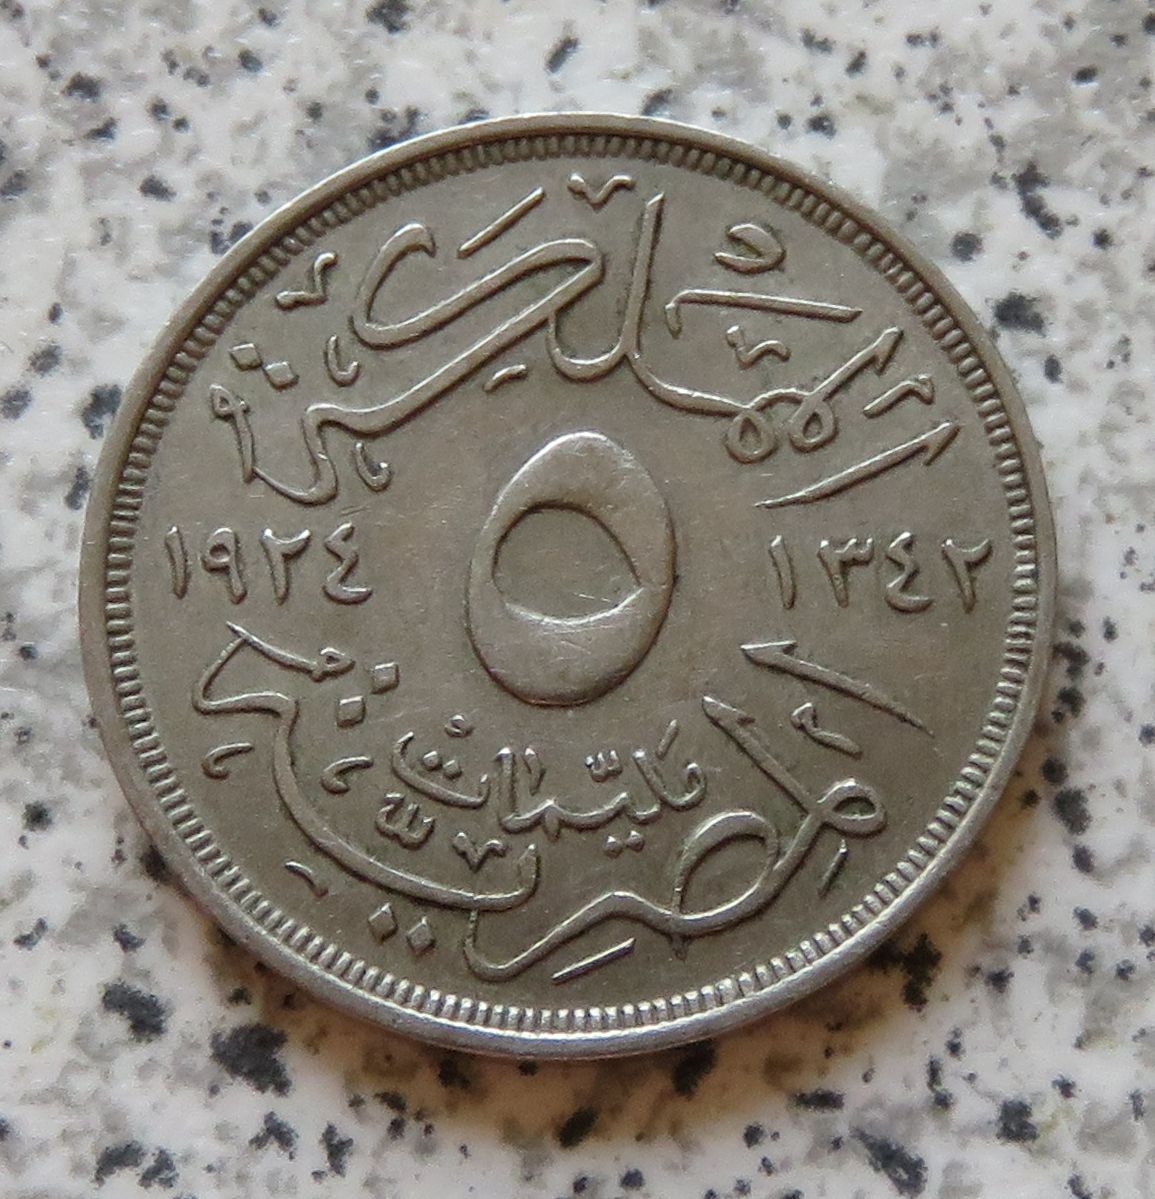  Ägypten 5 Milliemes 1924 / AH 1342, Erhaltung   